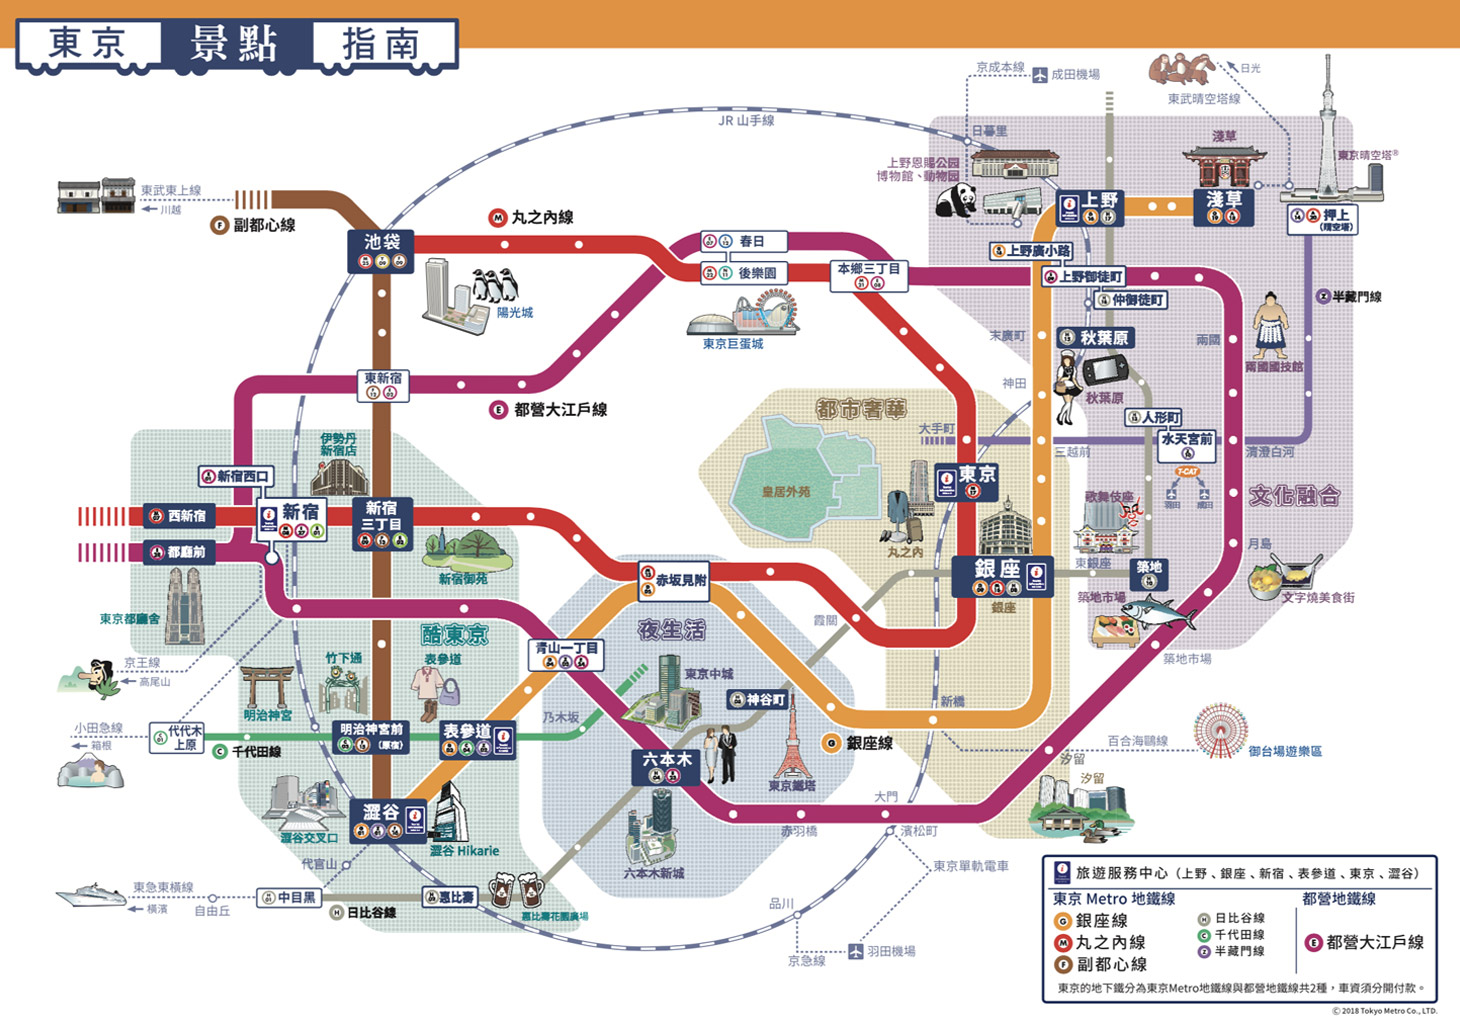 Tokyo Metro Map